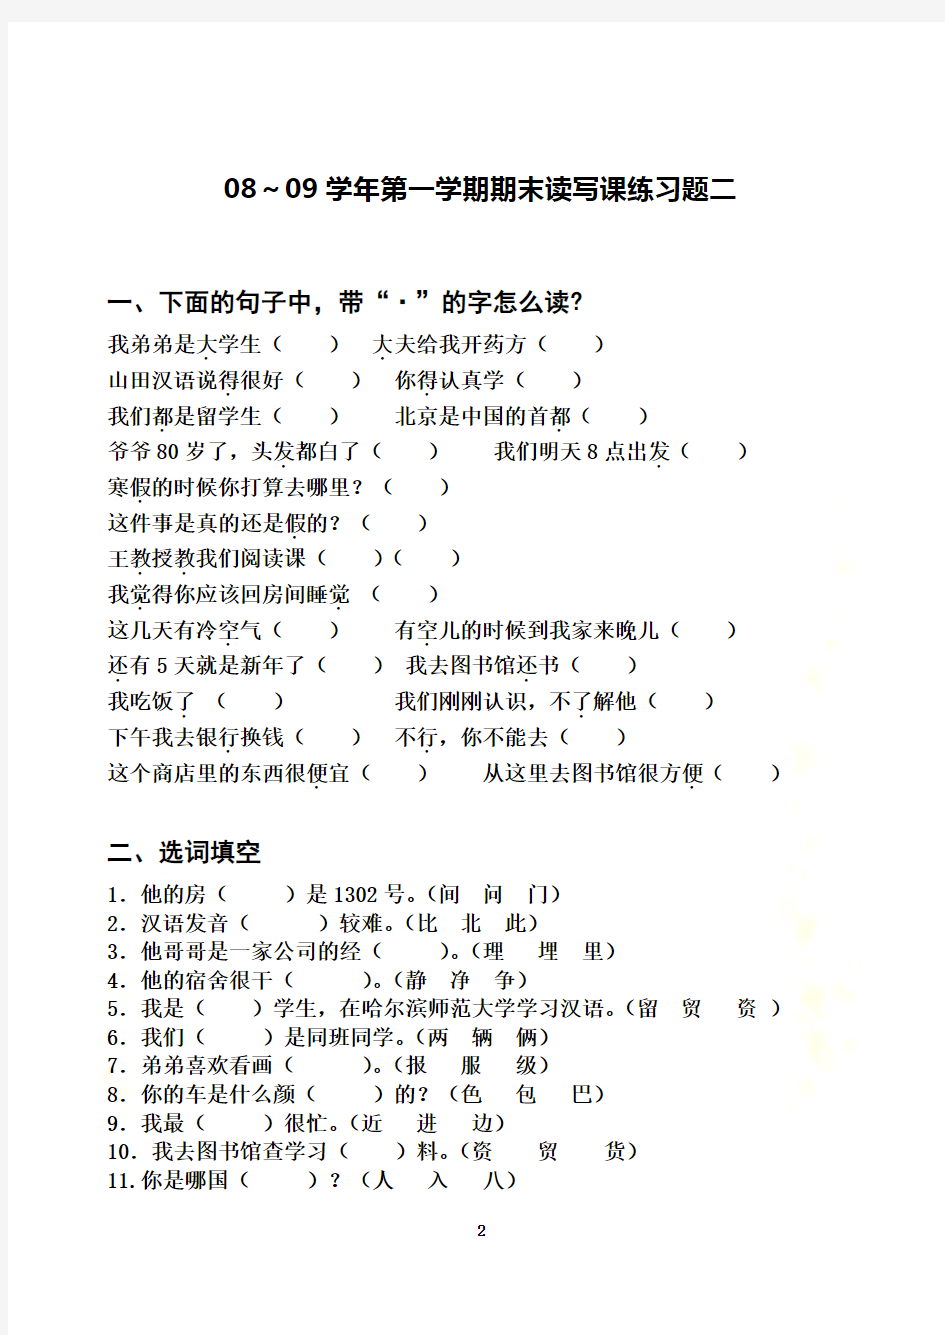 初级汉语读写课练习题1